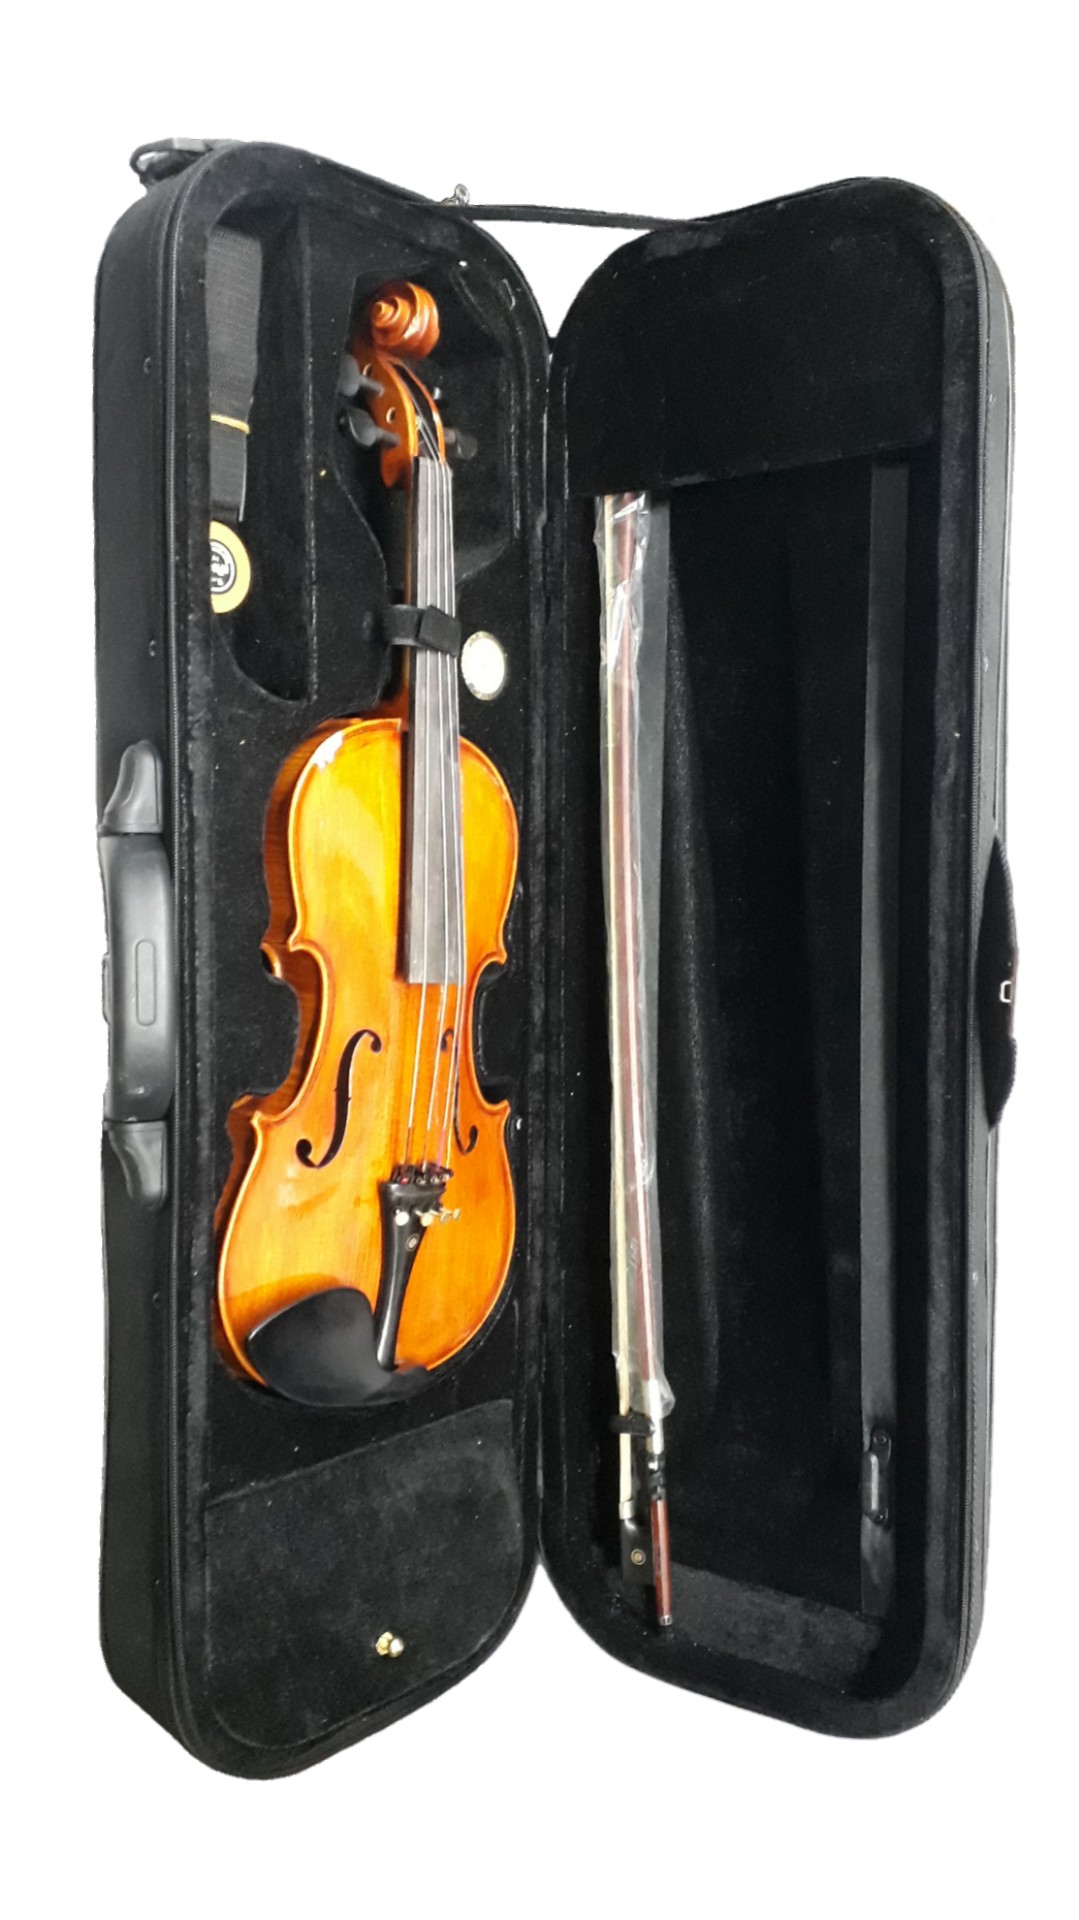 Violino Eagle Vk644 4/4 Rajado Prof.C/Higrometro E Espaleira Completo